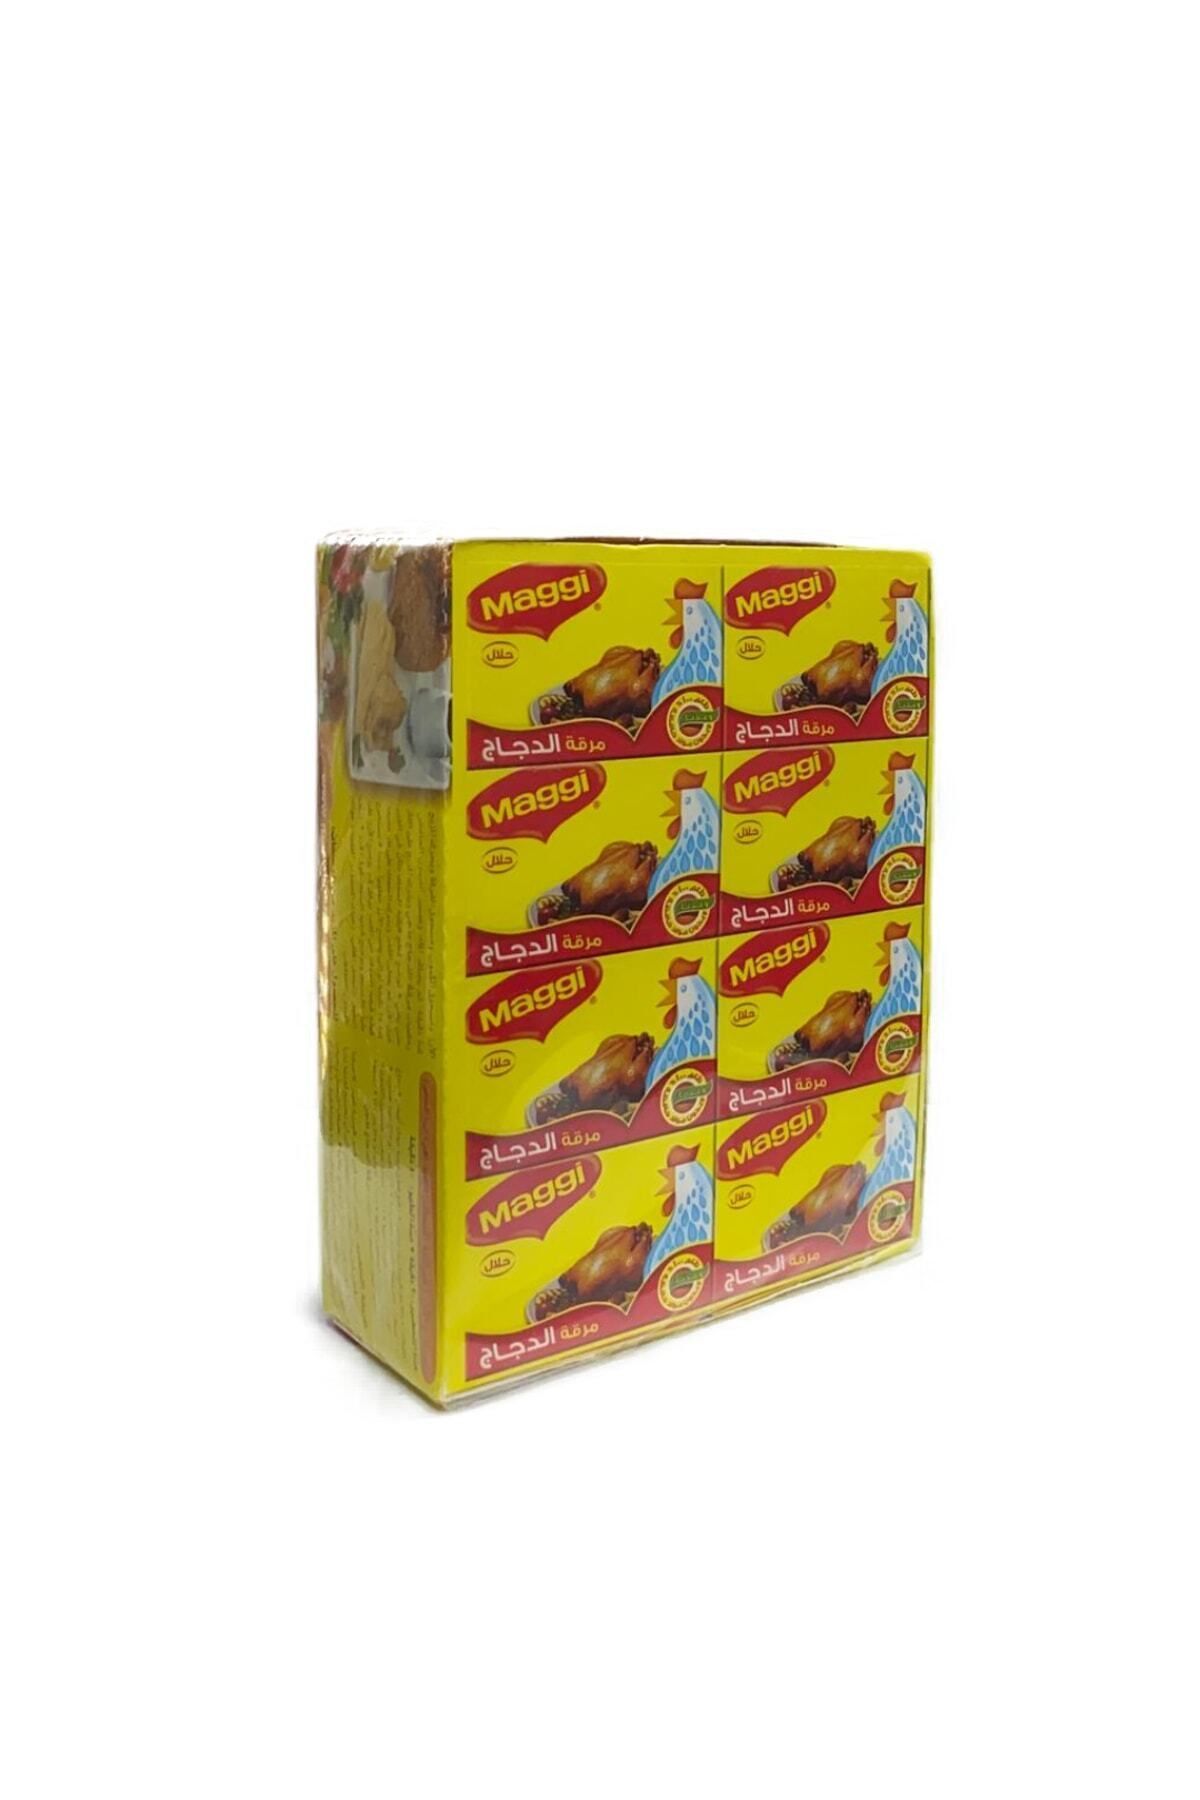 Maggi Chicken Stock Cube,30 Packs X 20g